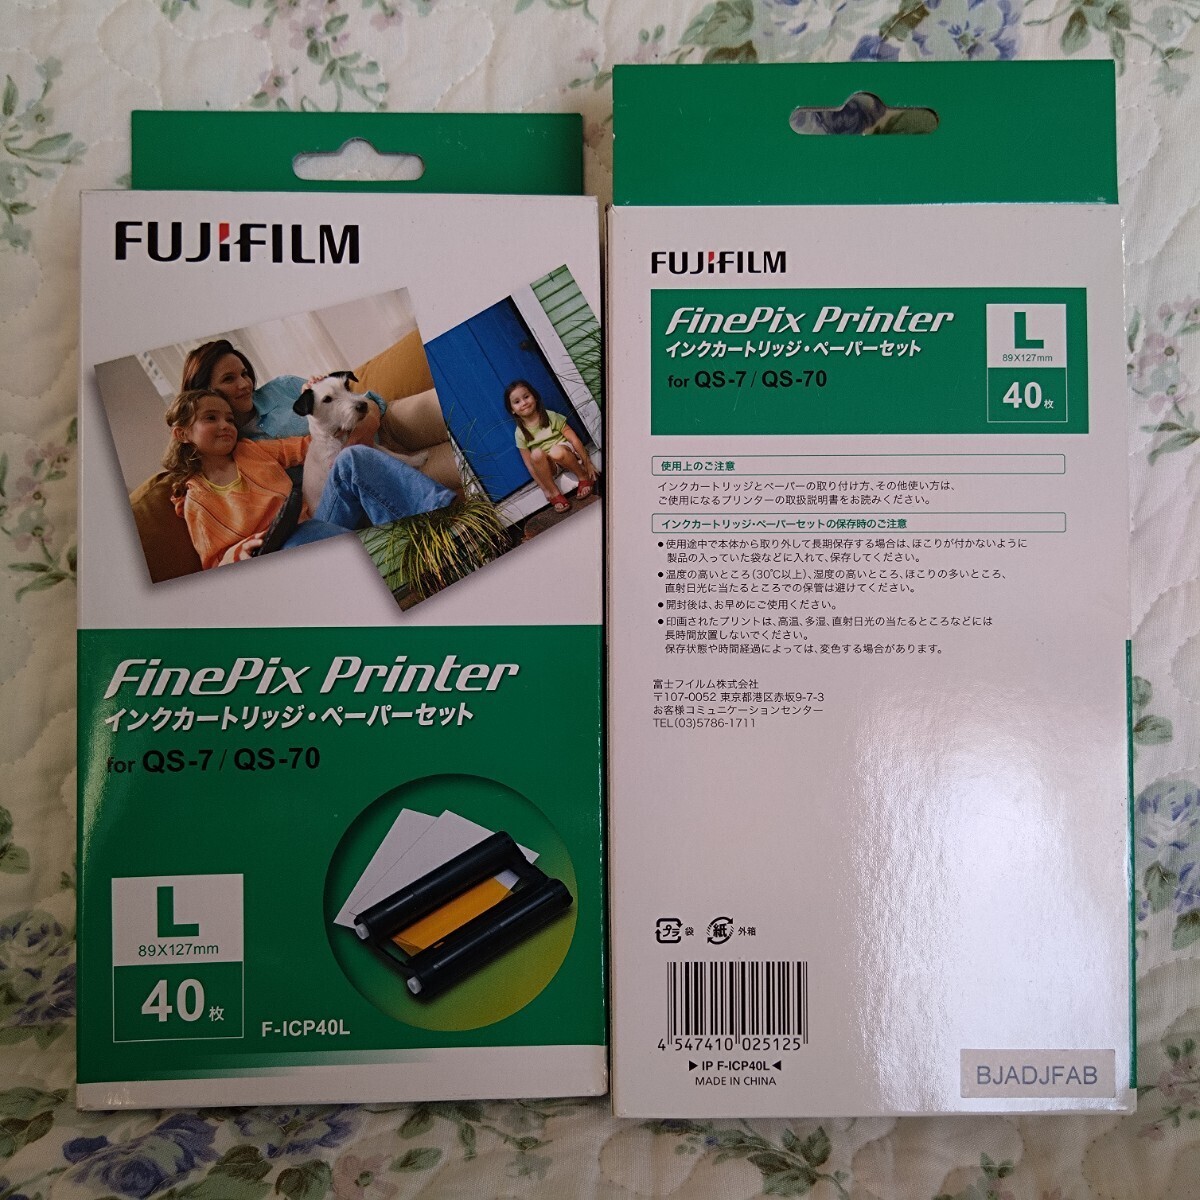 FUJIFILM Fuji плёнка снят с производства .. товар FinePix Printer QS-7*QS-70 для специальный чернильный картридж * бумага комплект 3 коробка продажа комплектом 